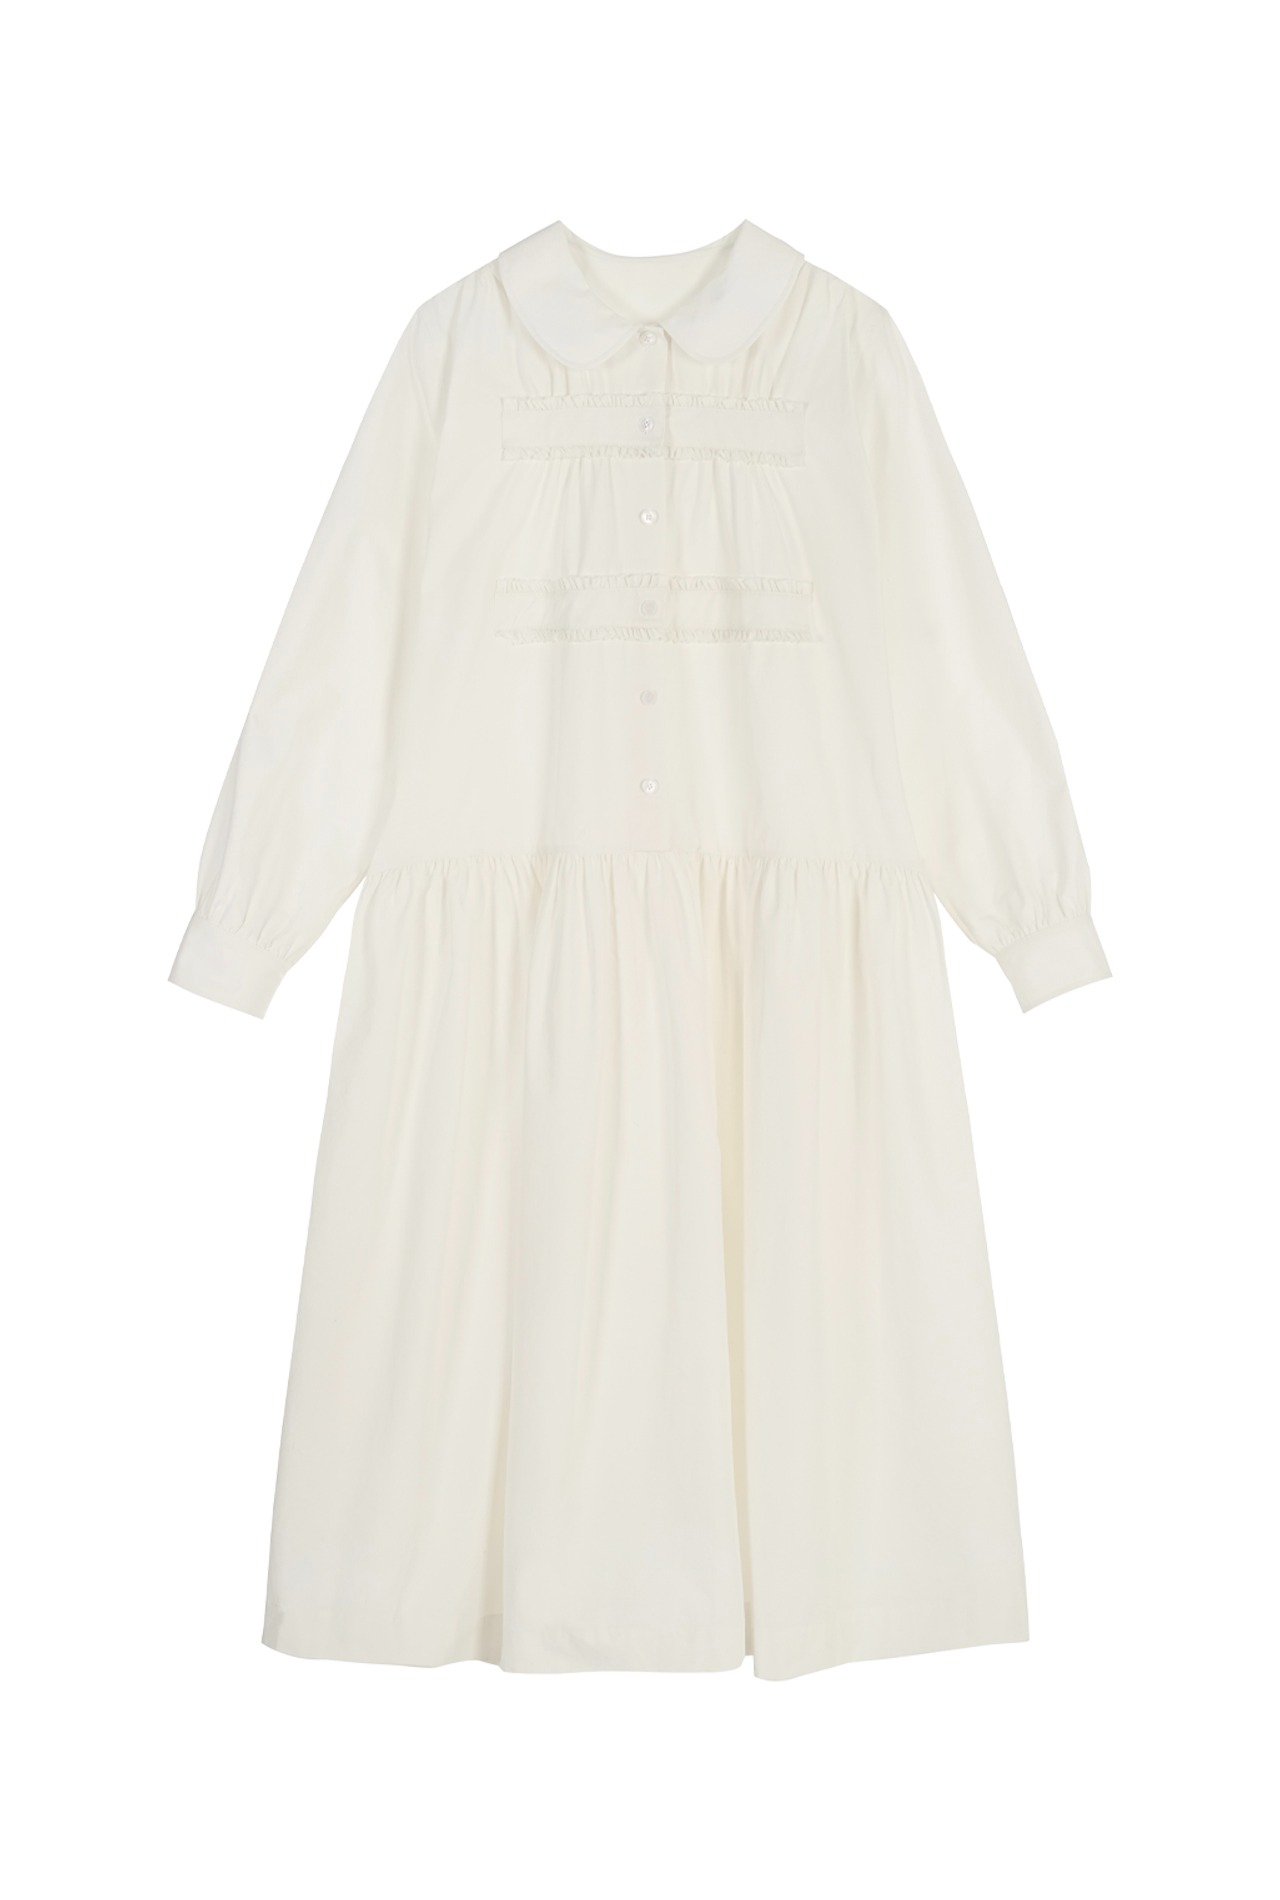 ROUND COLLAR SHIRT DRESS (WHITE)